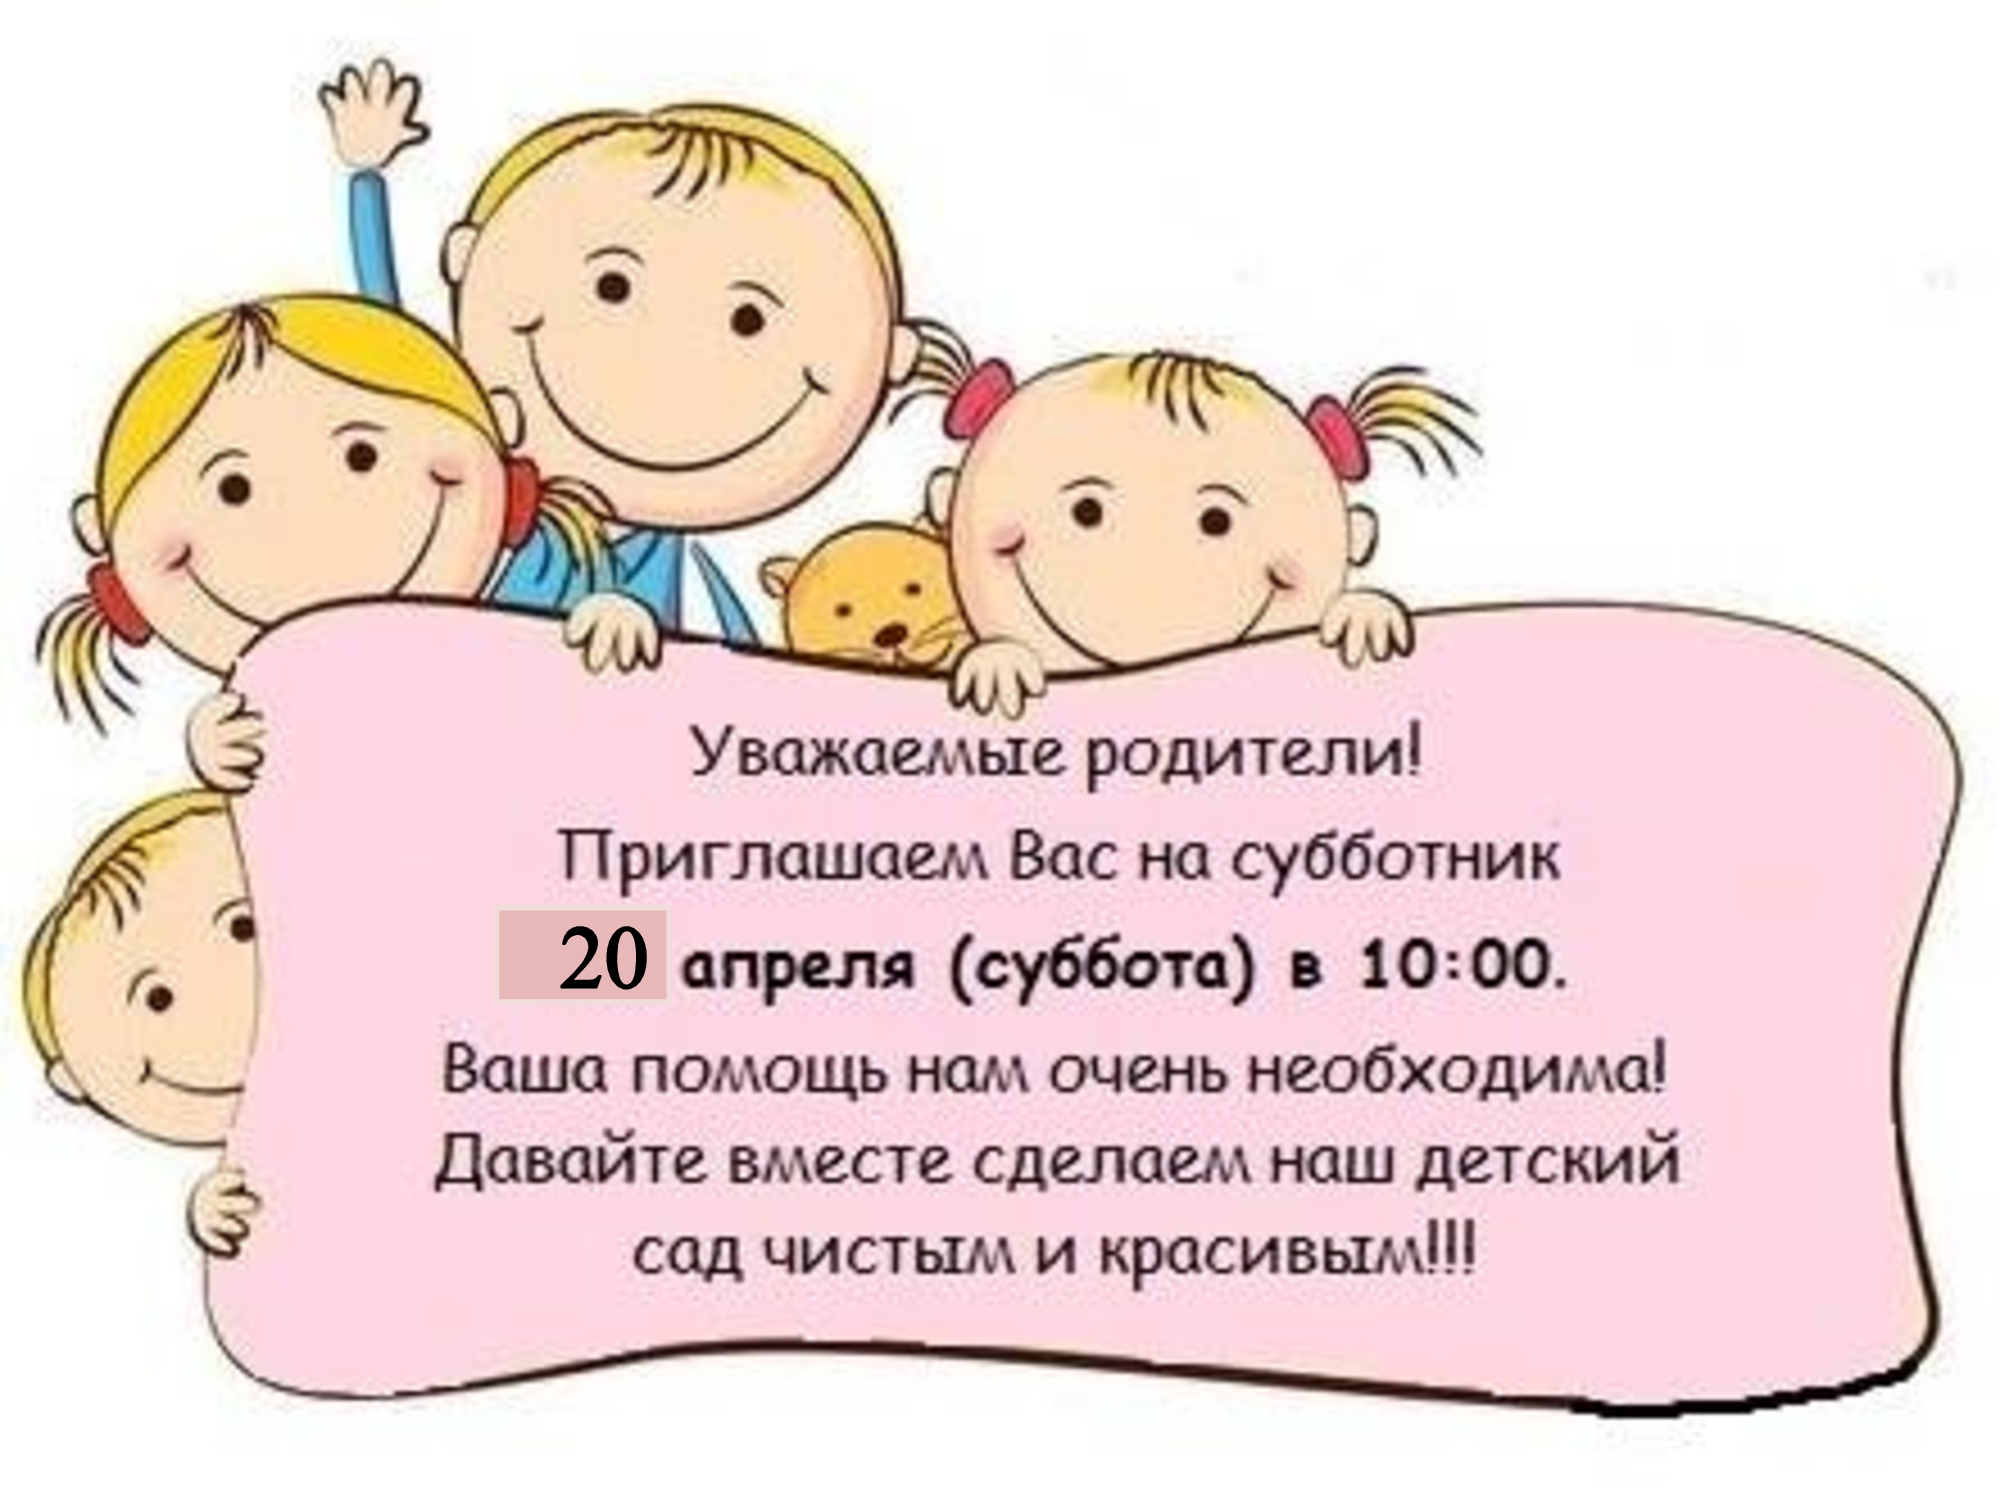 Приглашение на субботник в детском саду для родителей